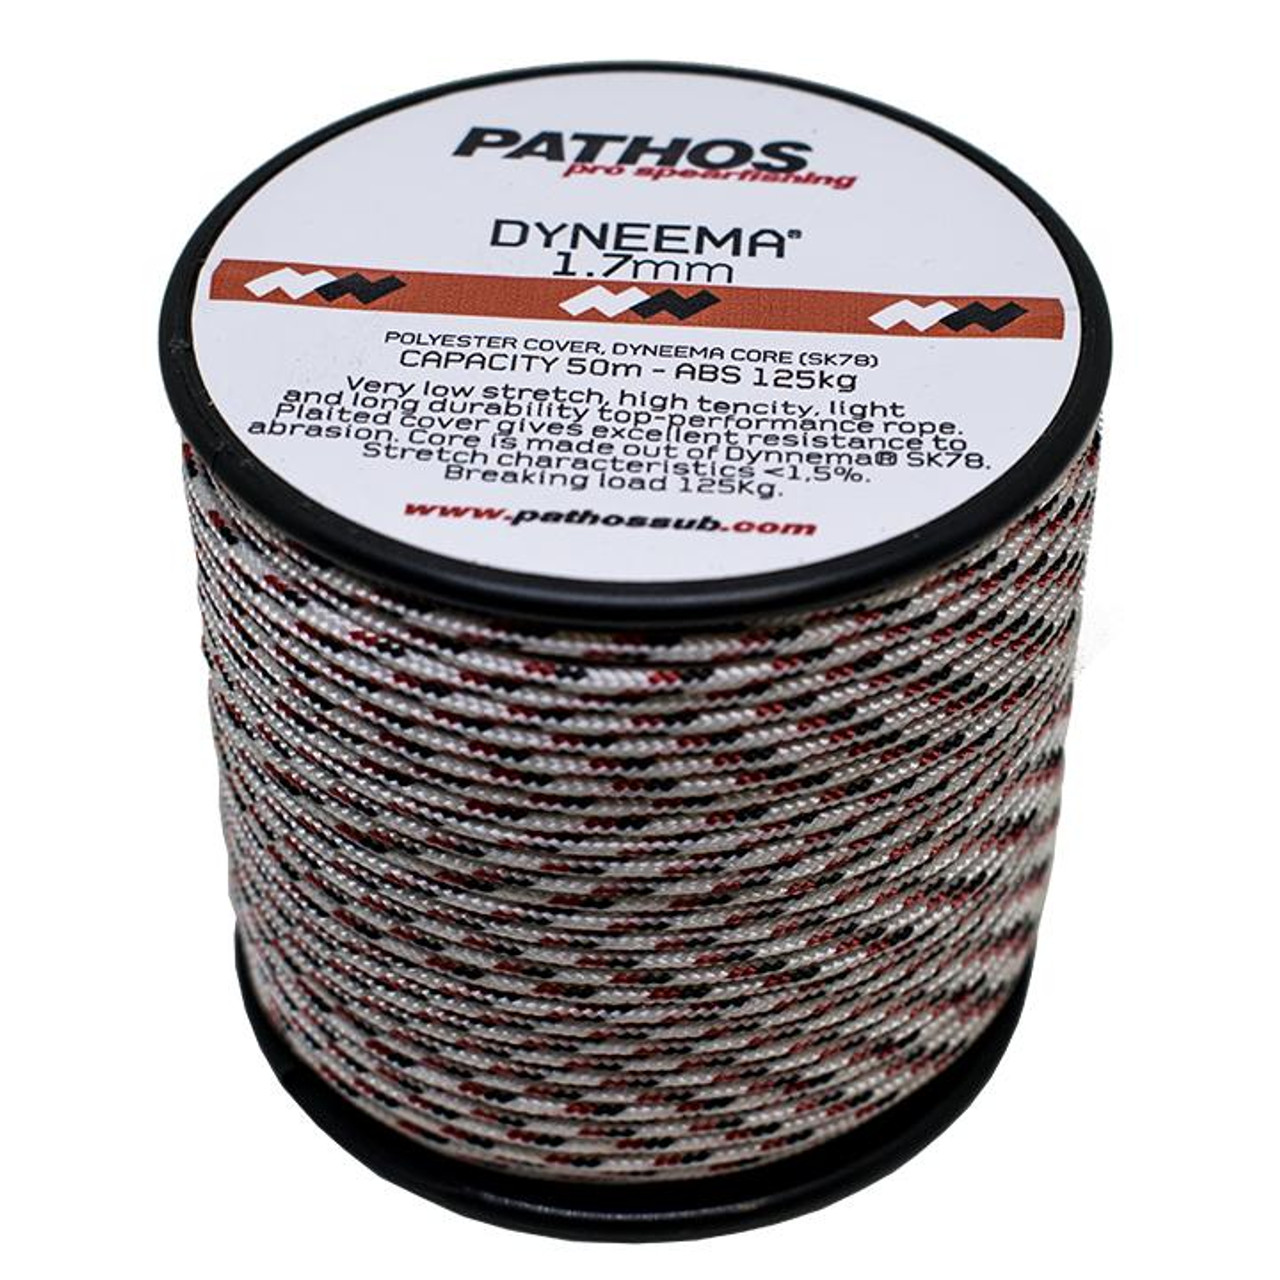 Pathos Dyneema Cord 50m - White 1.7mm